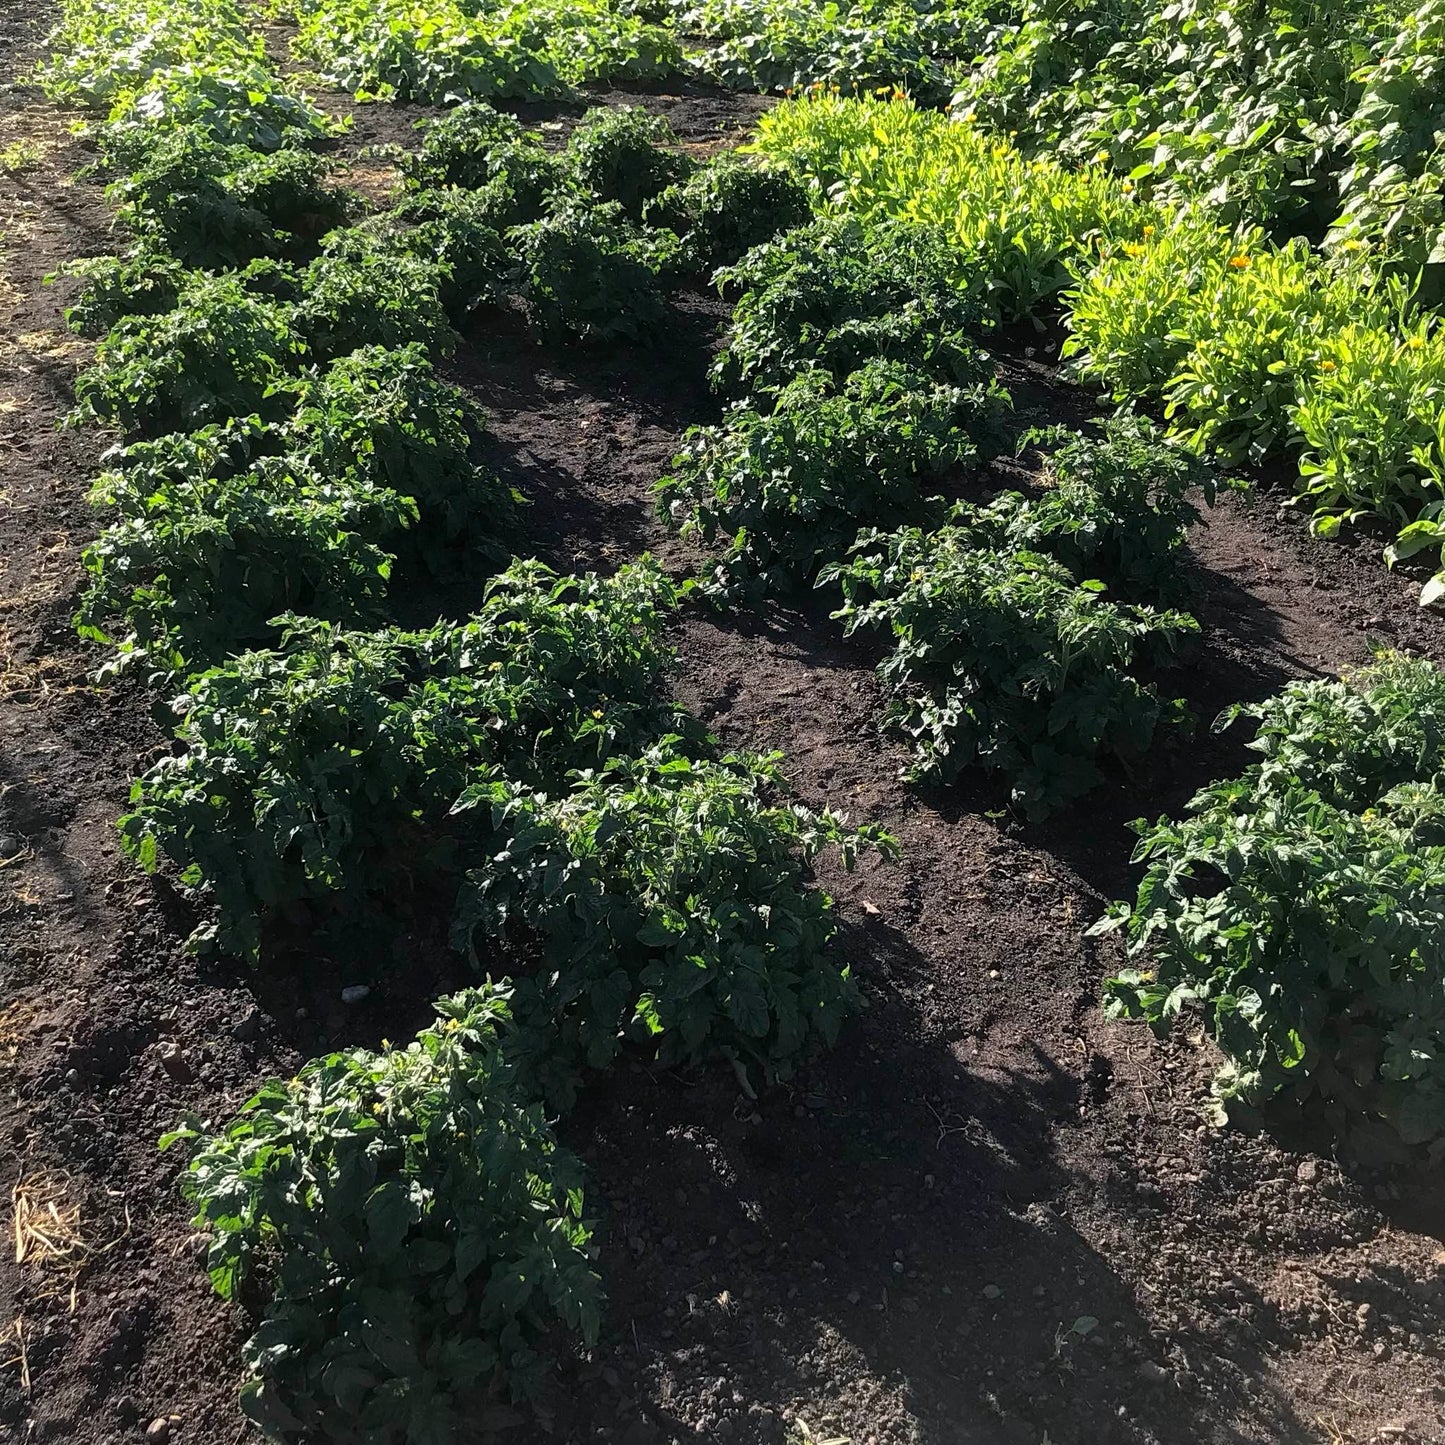 Dwarf tomato plants in the field.